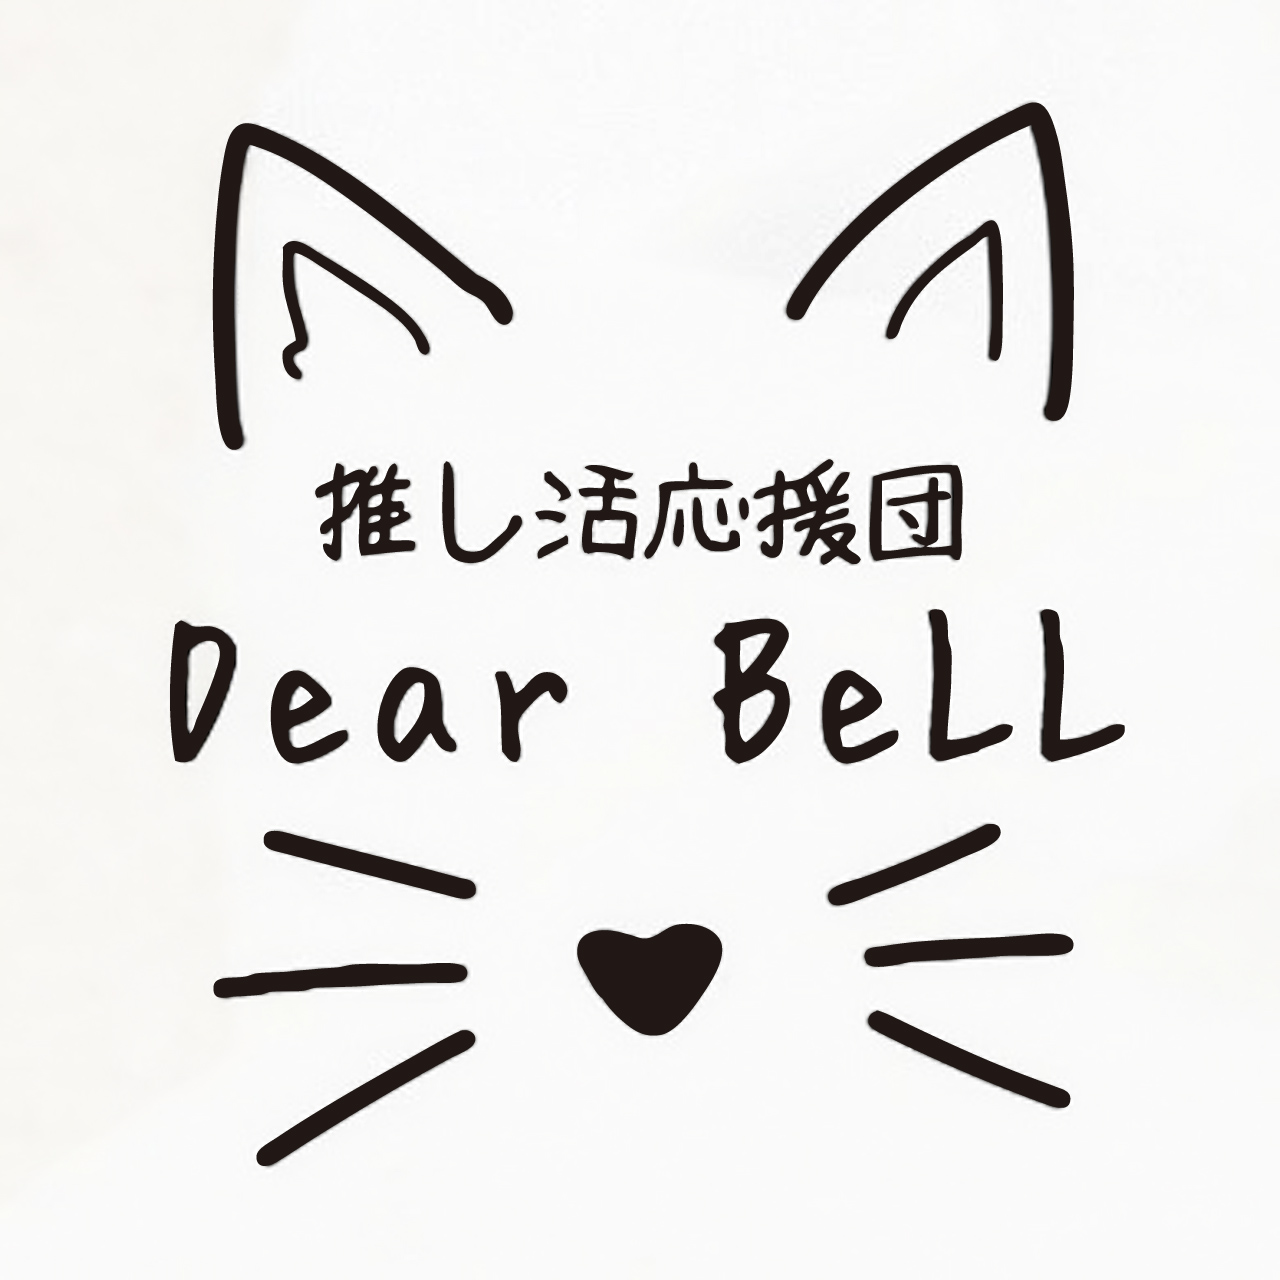 Dear BeLL - ディアベル